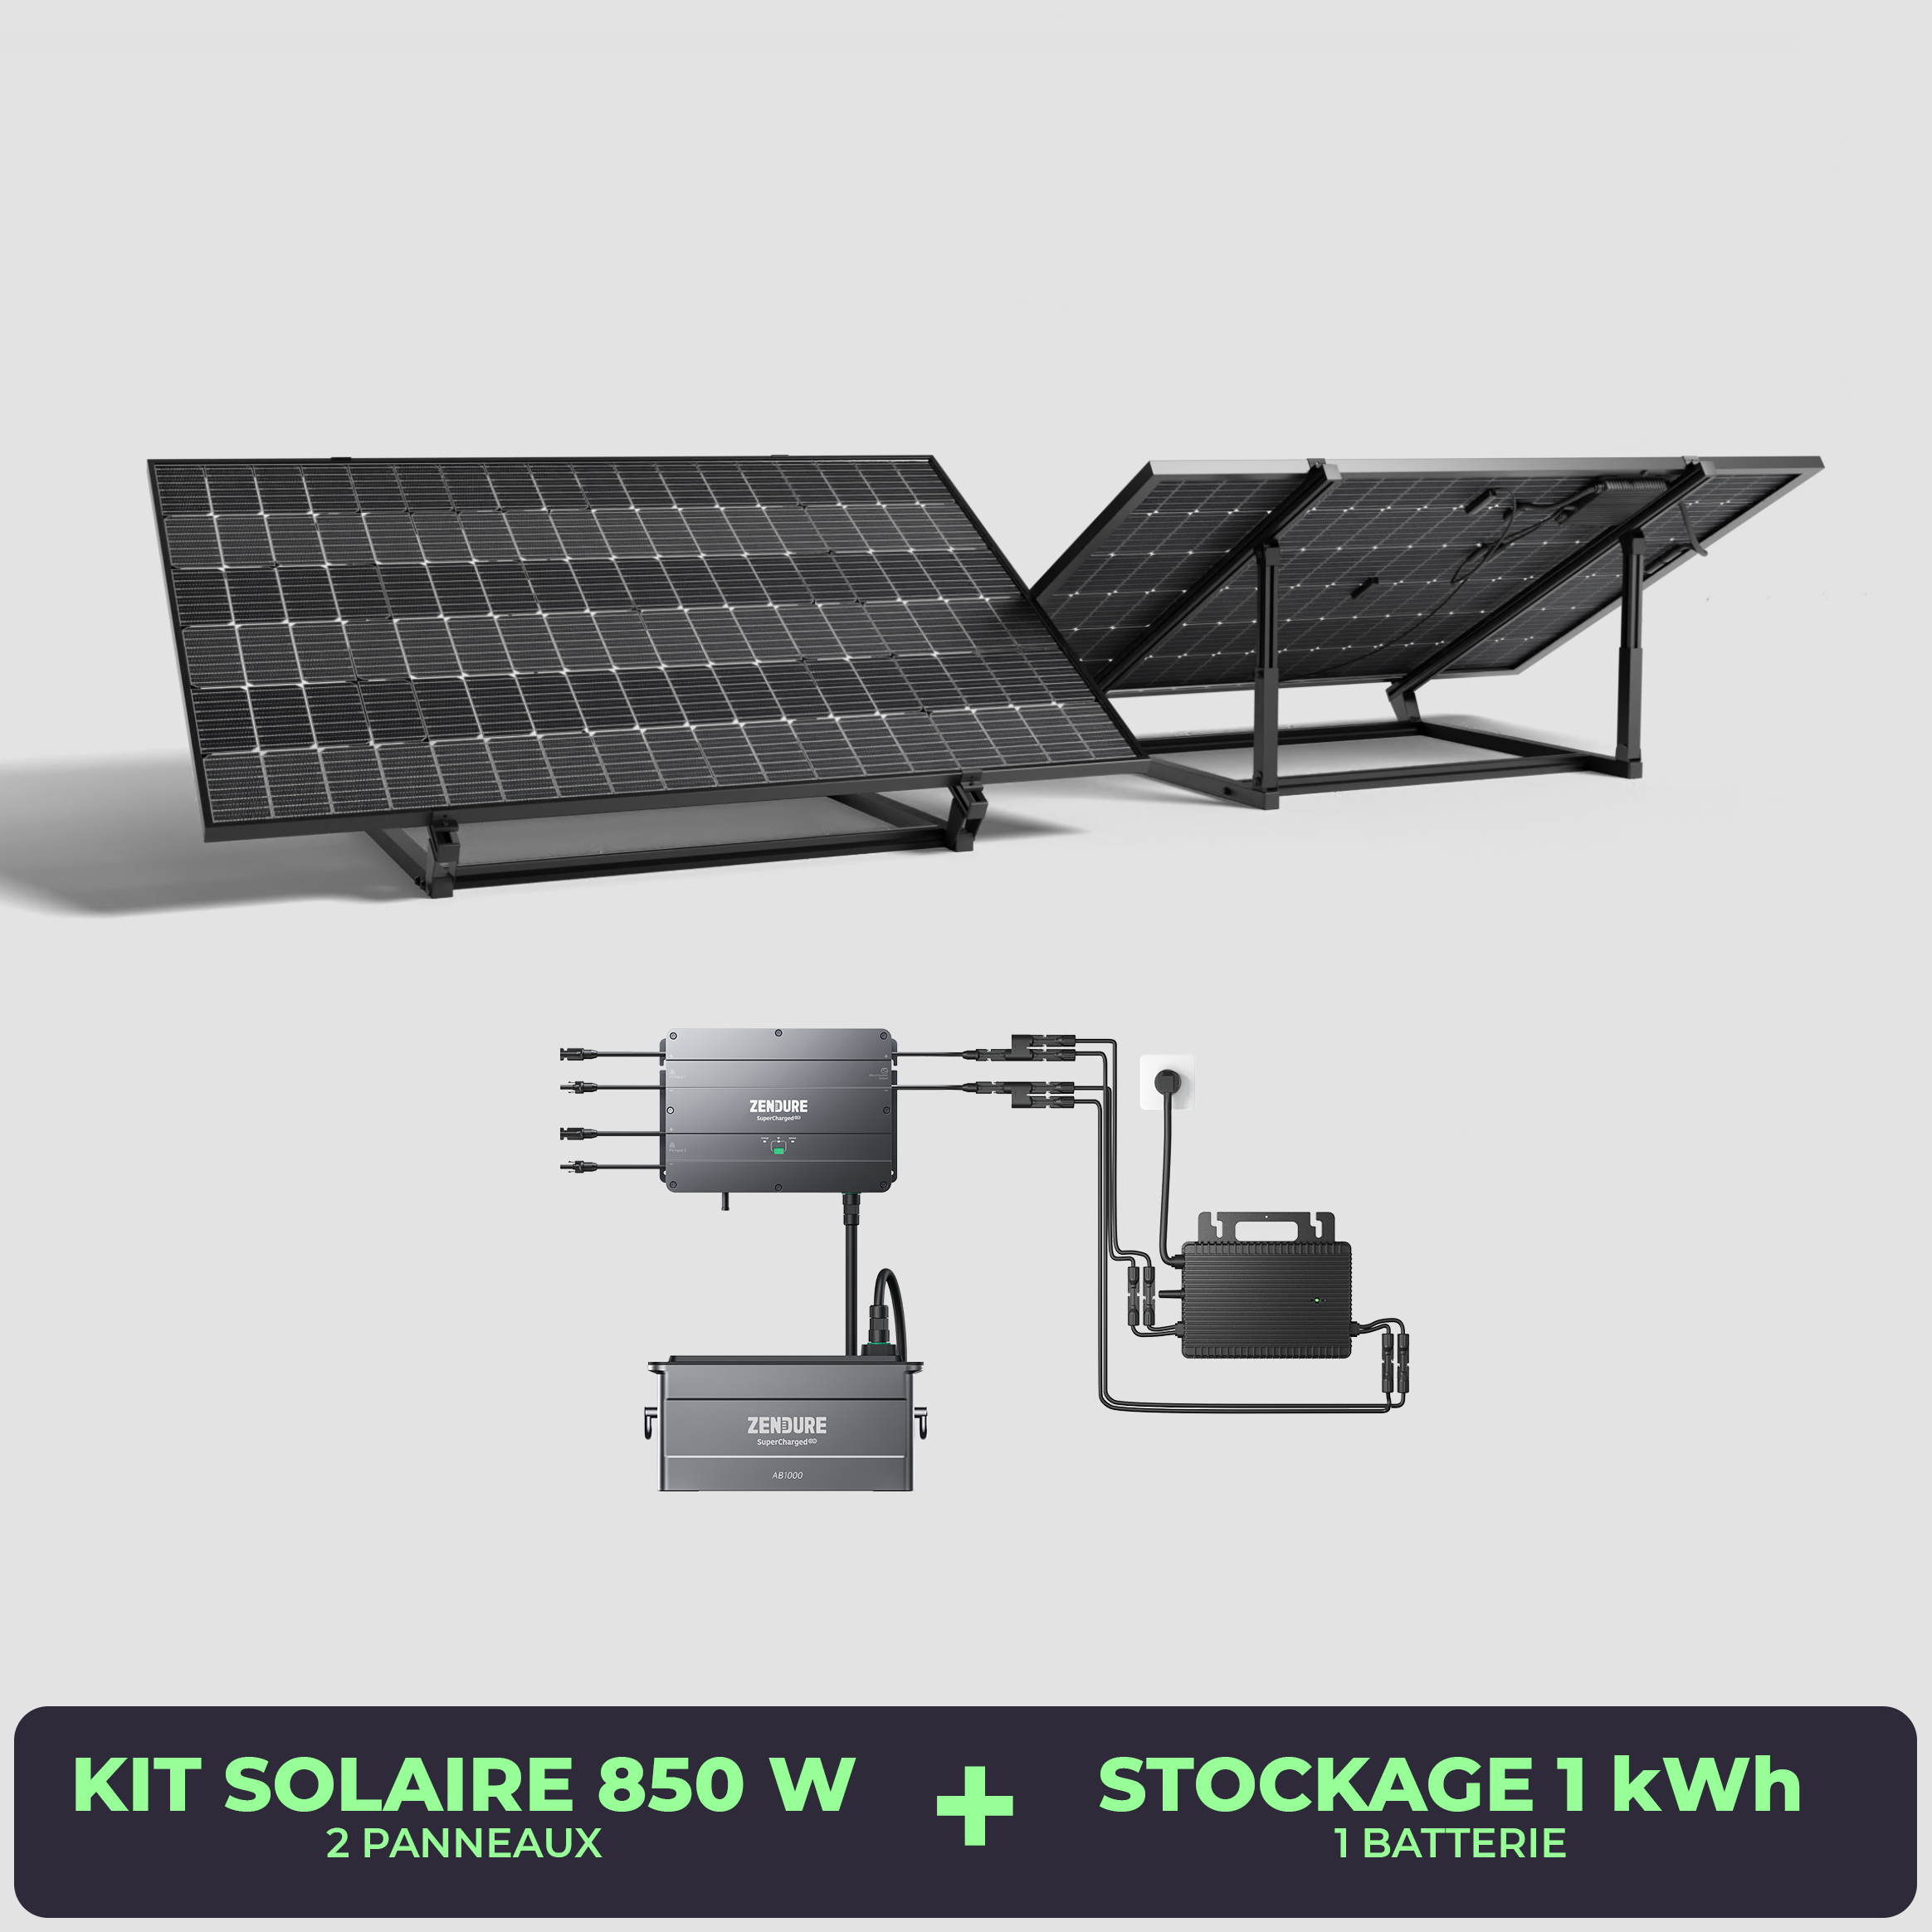 Batterie solaire portative / stockage énergie solaire - Ducatillon